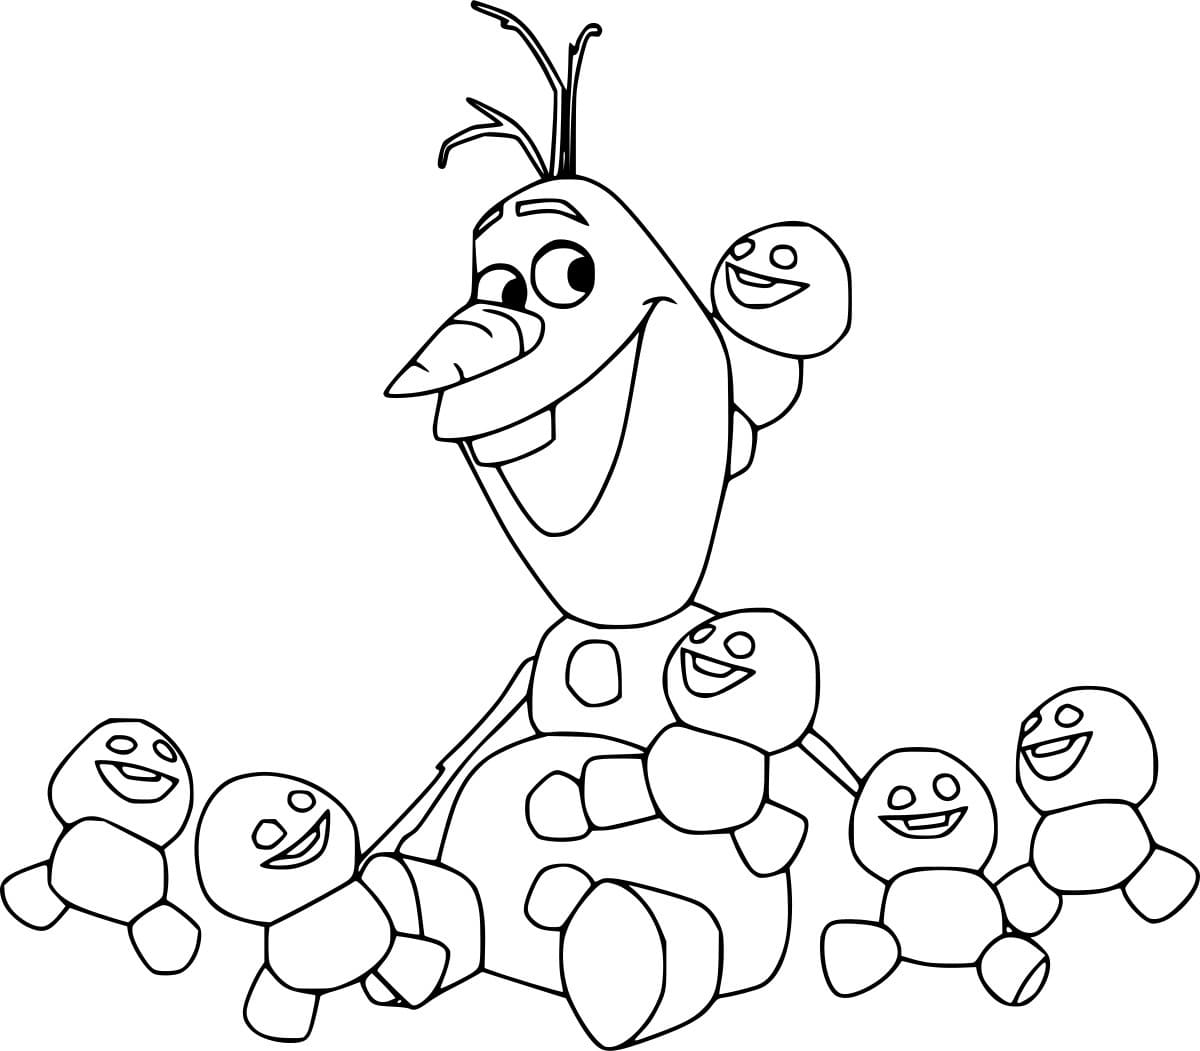 Desenhos de Olaf com bonecos de neve traquinas para colorir